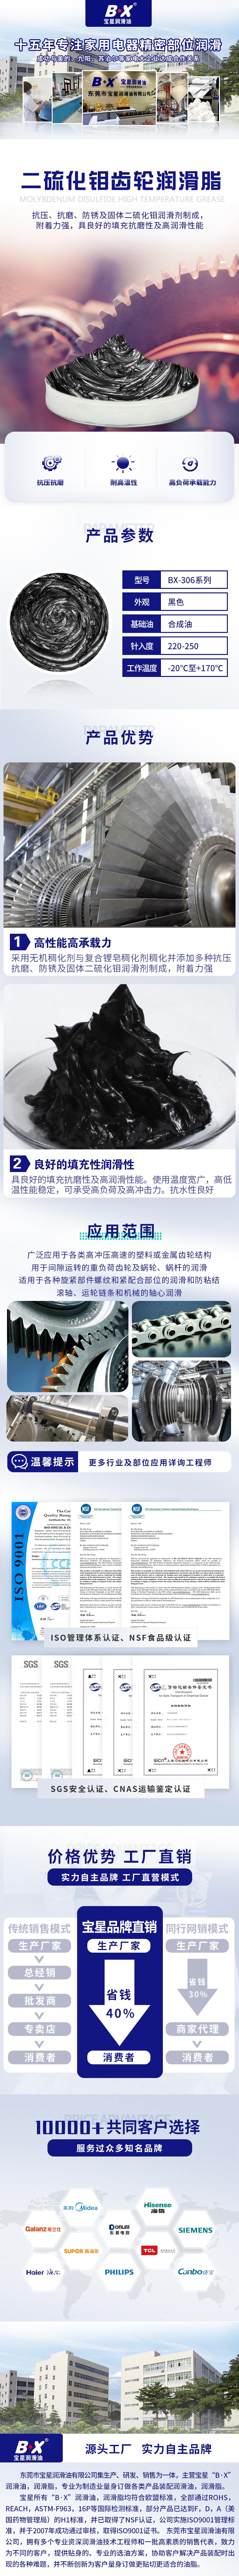 二硫化钼齿轮500万官网(中国)首页脂